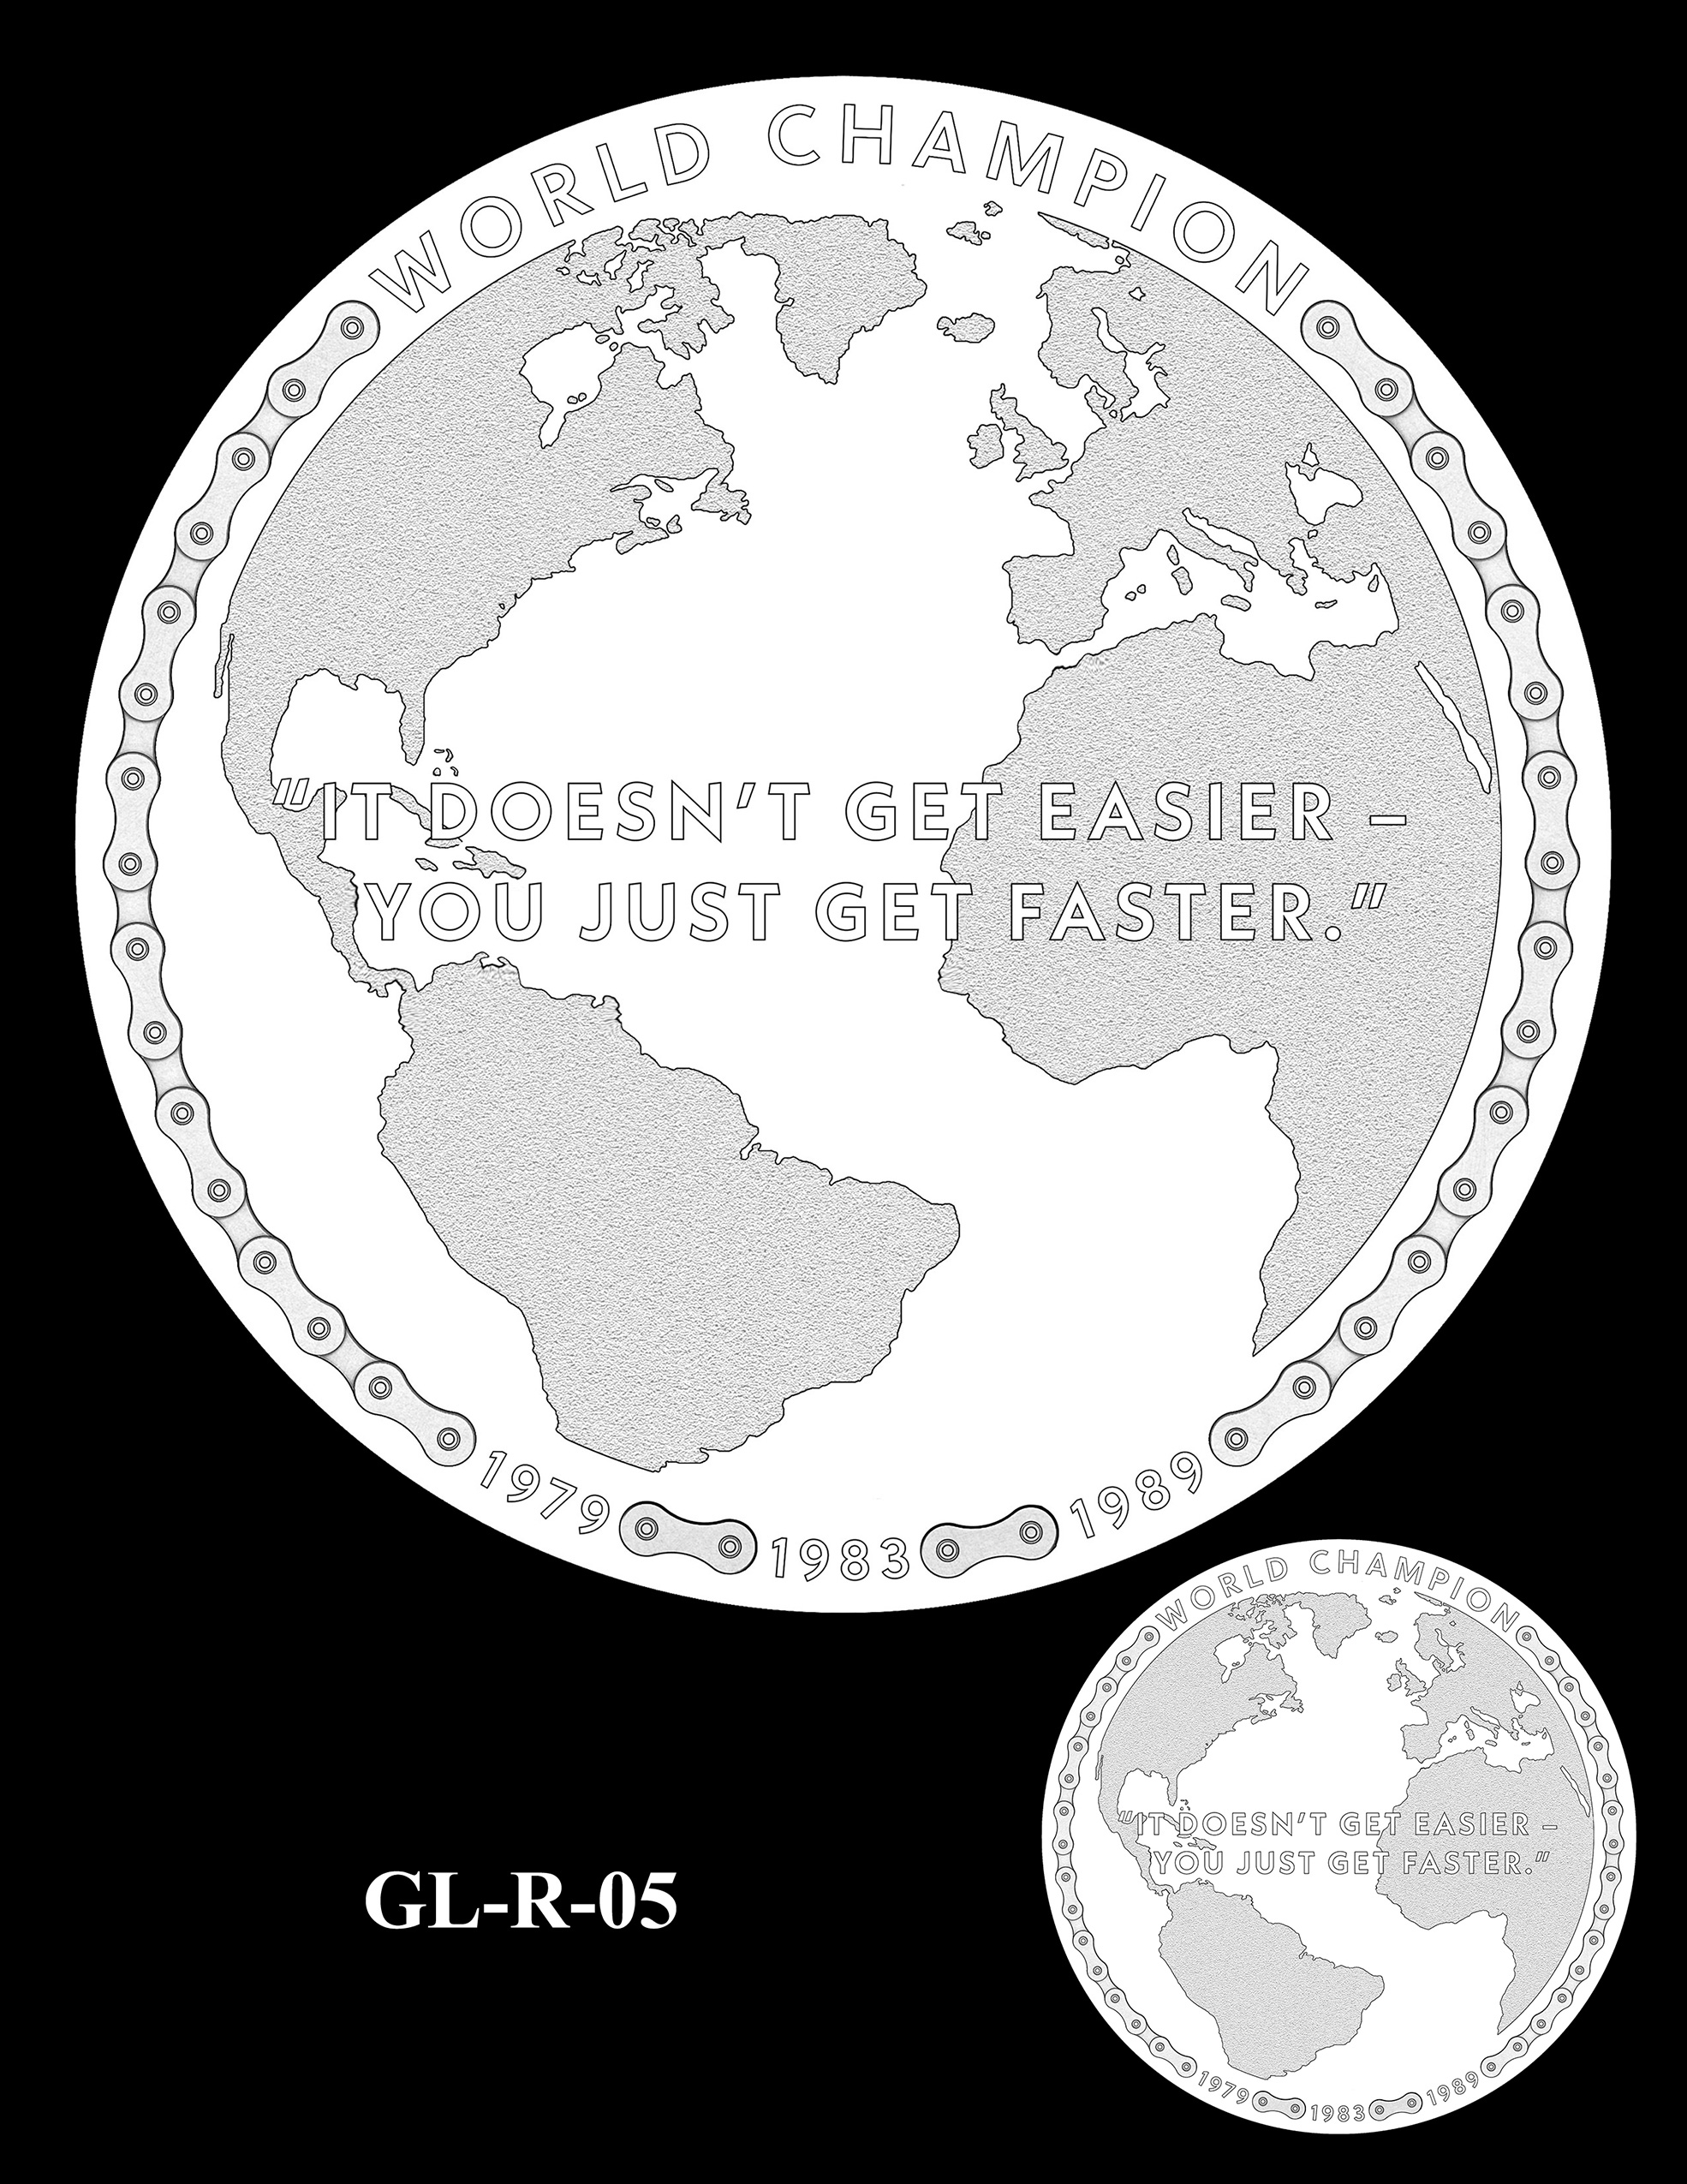 GL-R-05 -- Greg LeMond Congressional Gold Medal